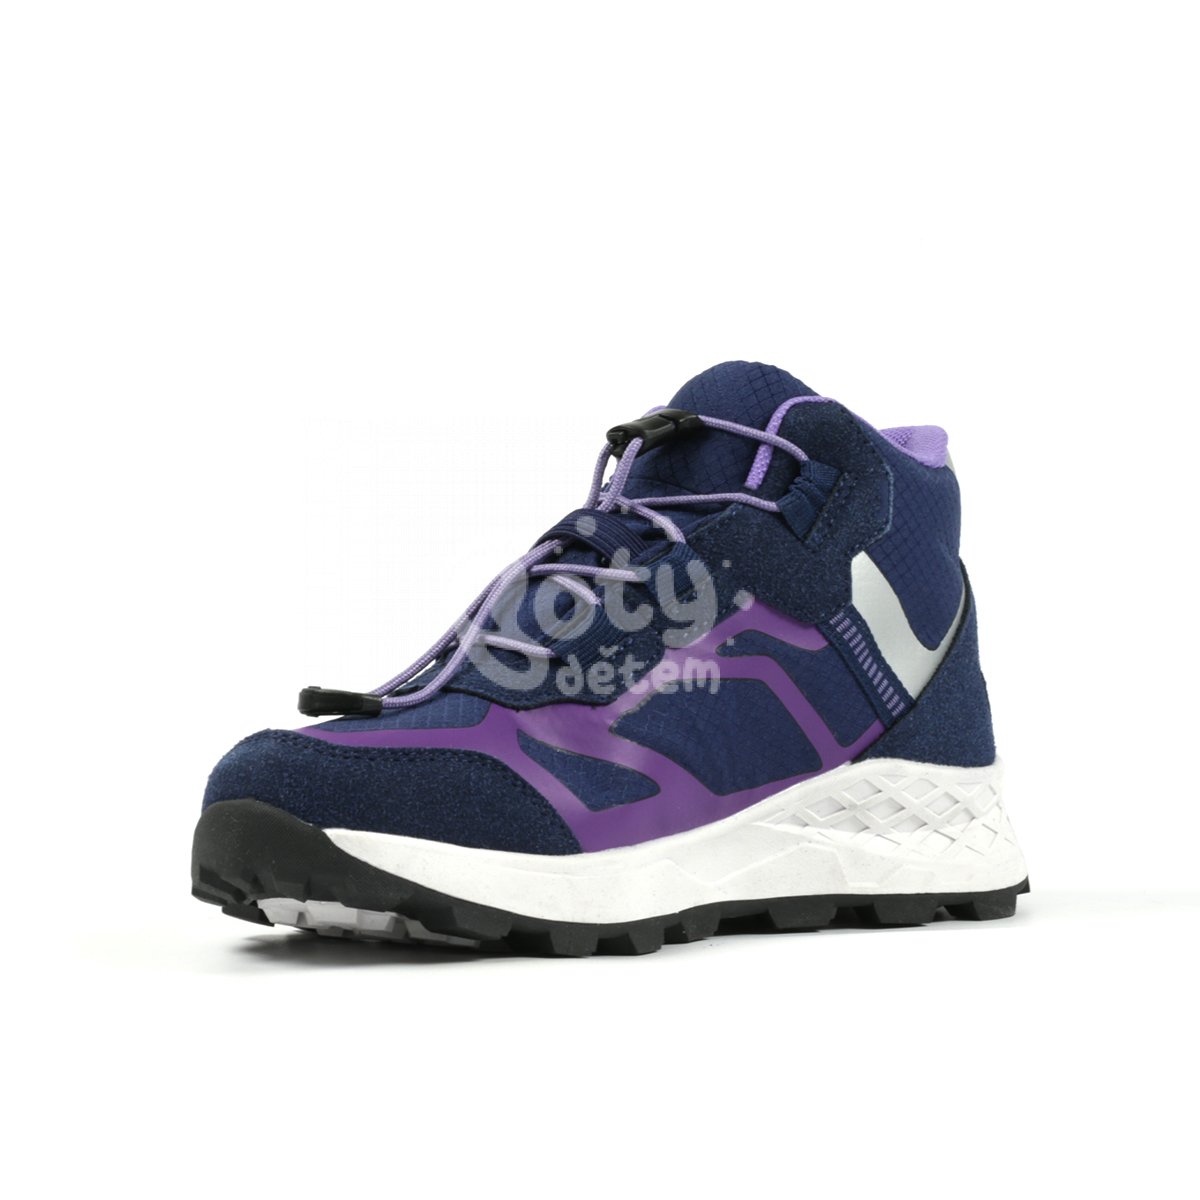 Sportovní obuv Richter Venture 7451-6191-6821 fialová